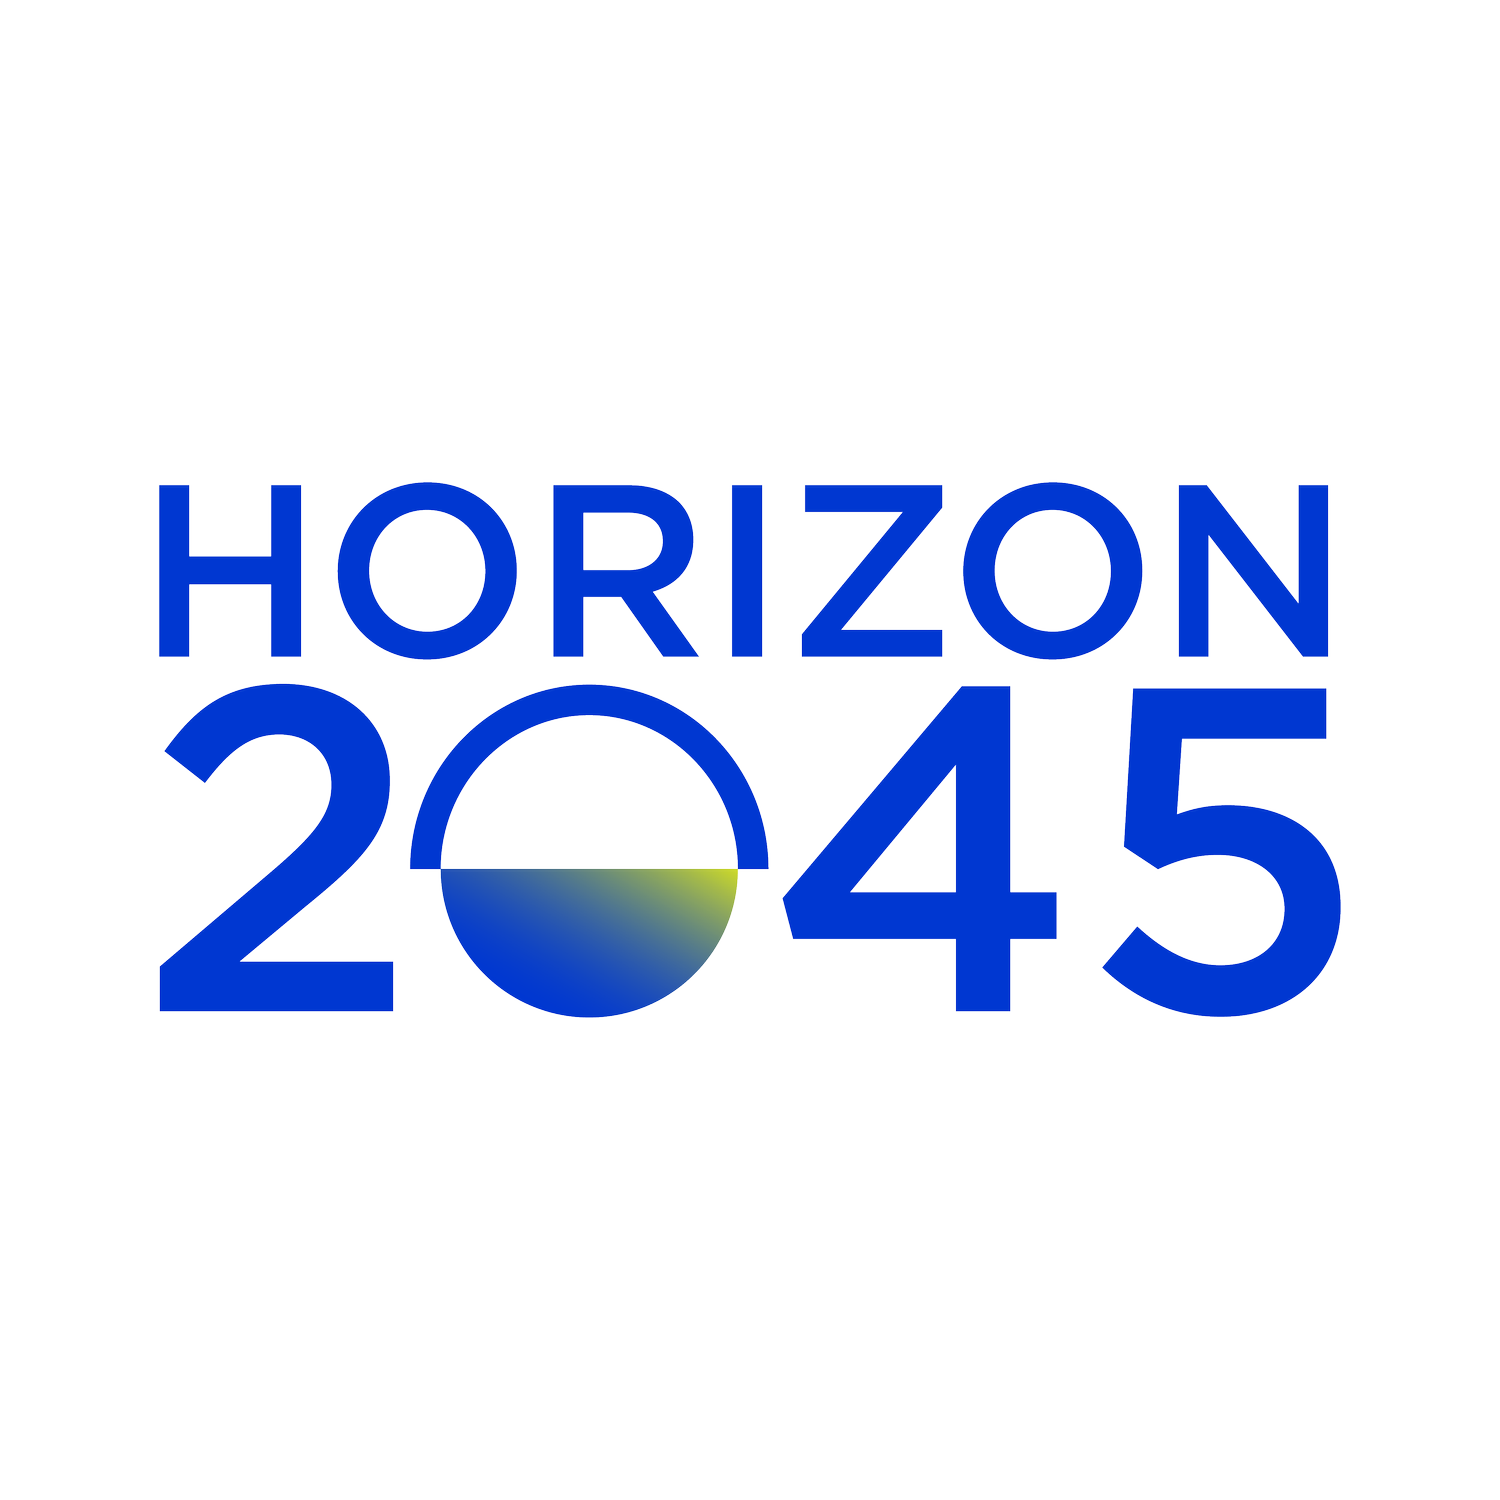 Horizon2045